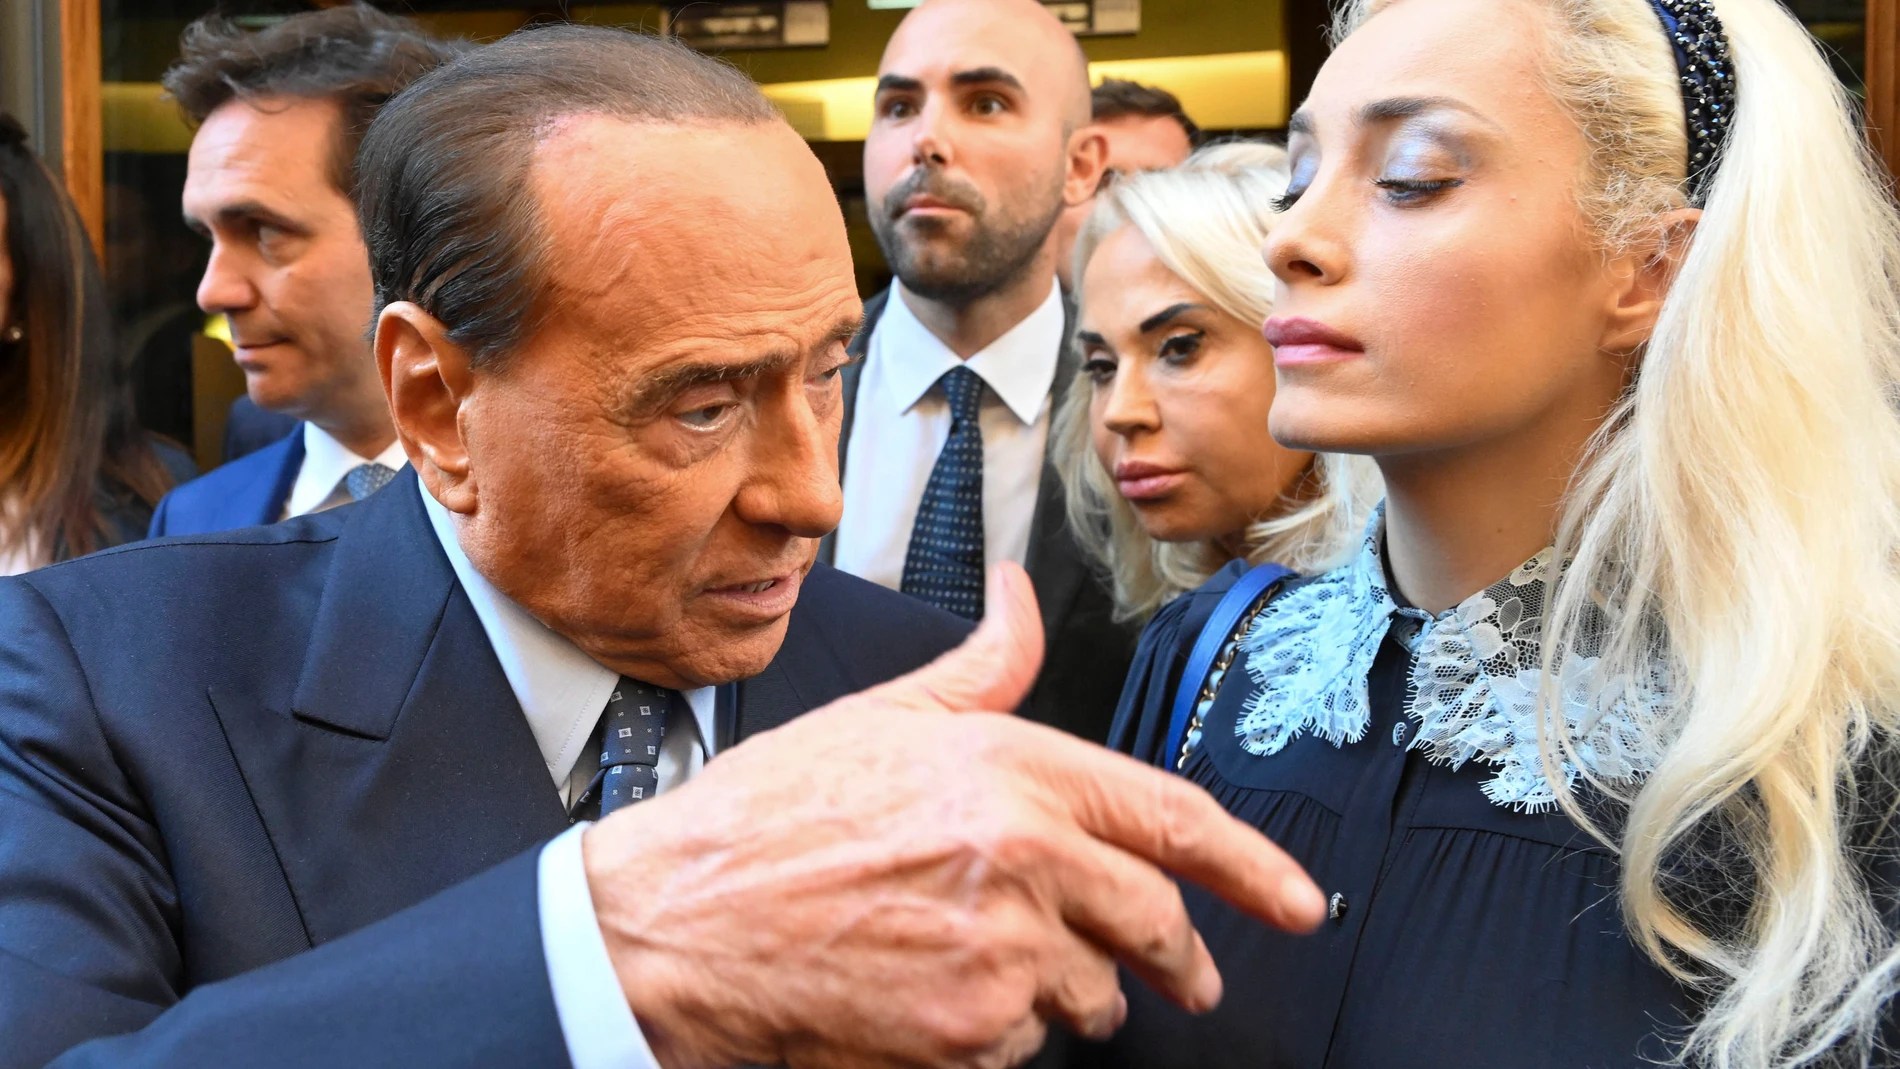 Los hijos de Berlusconi, desesperados porque su padre coleccionaba arte sin tener ni idea